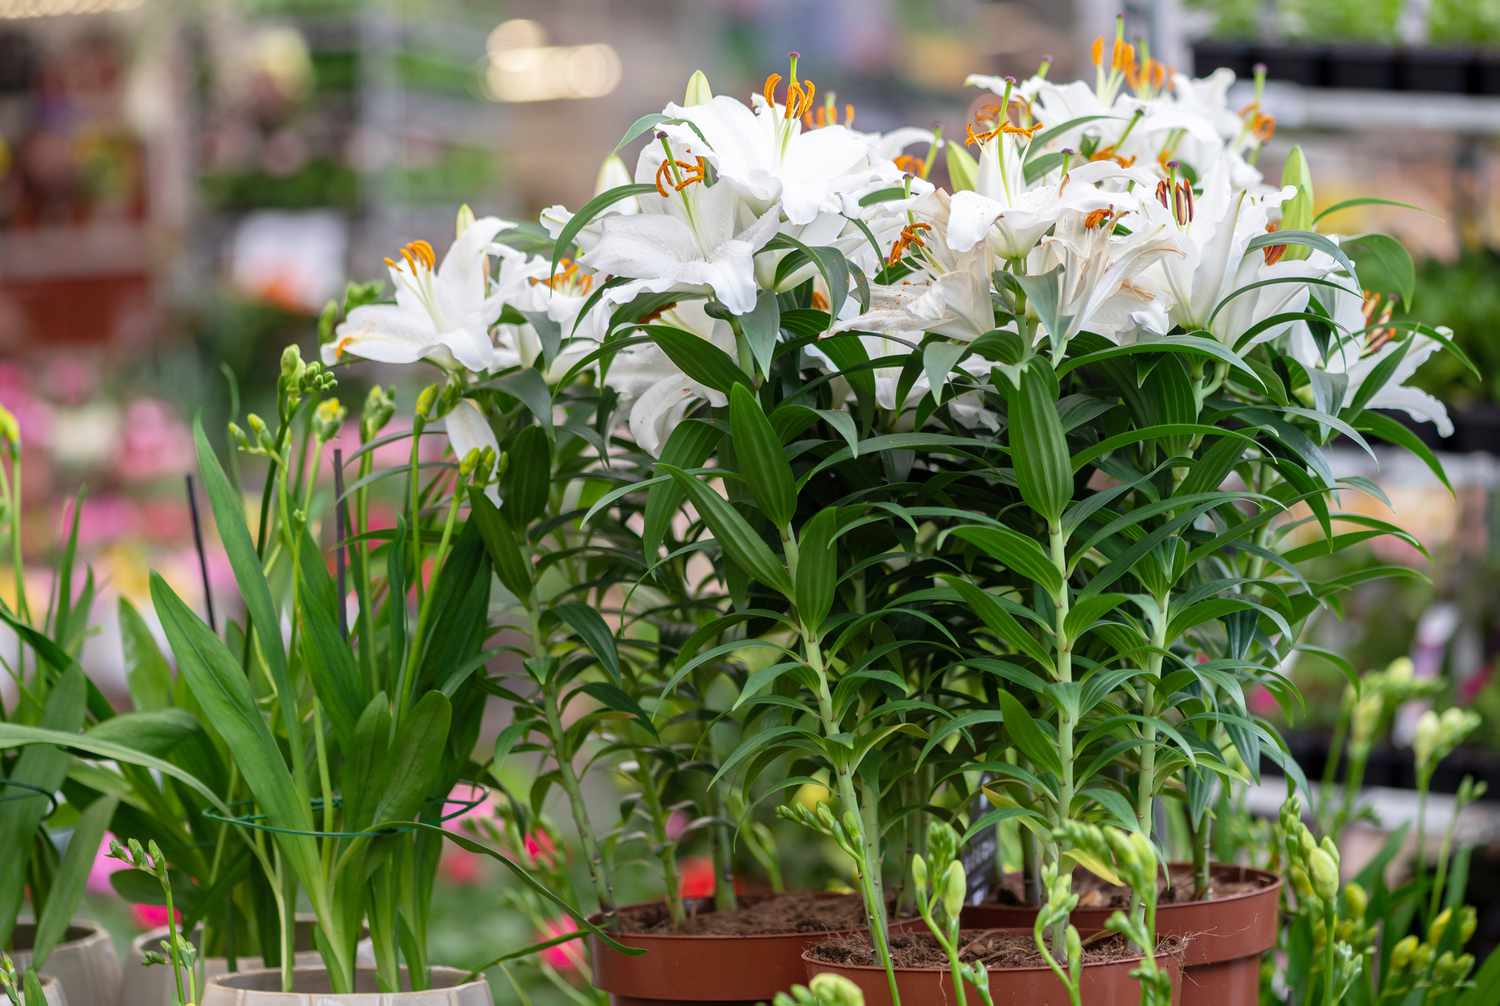 Lirios Casa Blanca en maceta con grandes flores blancas sobre tallos altos